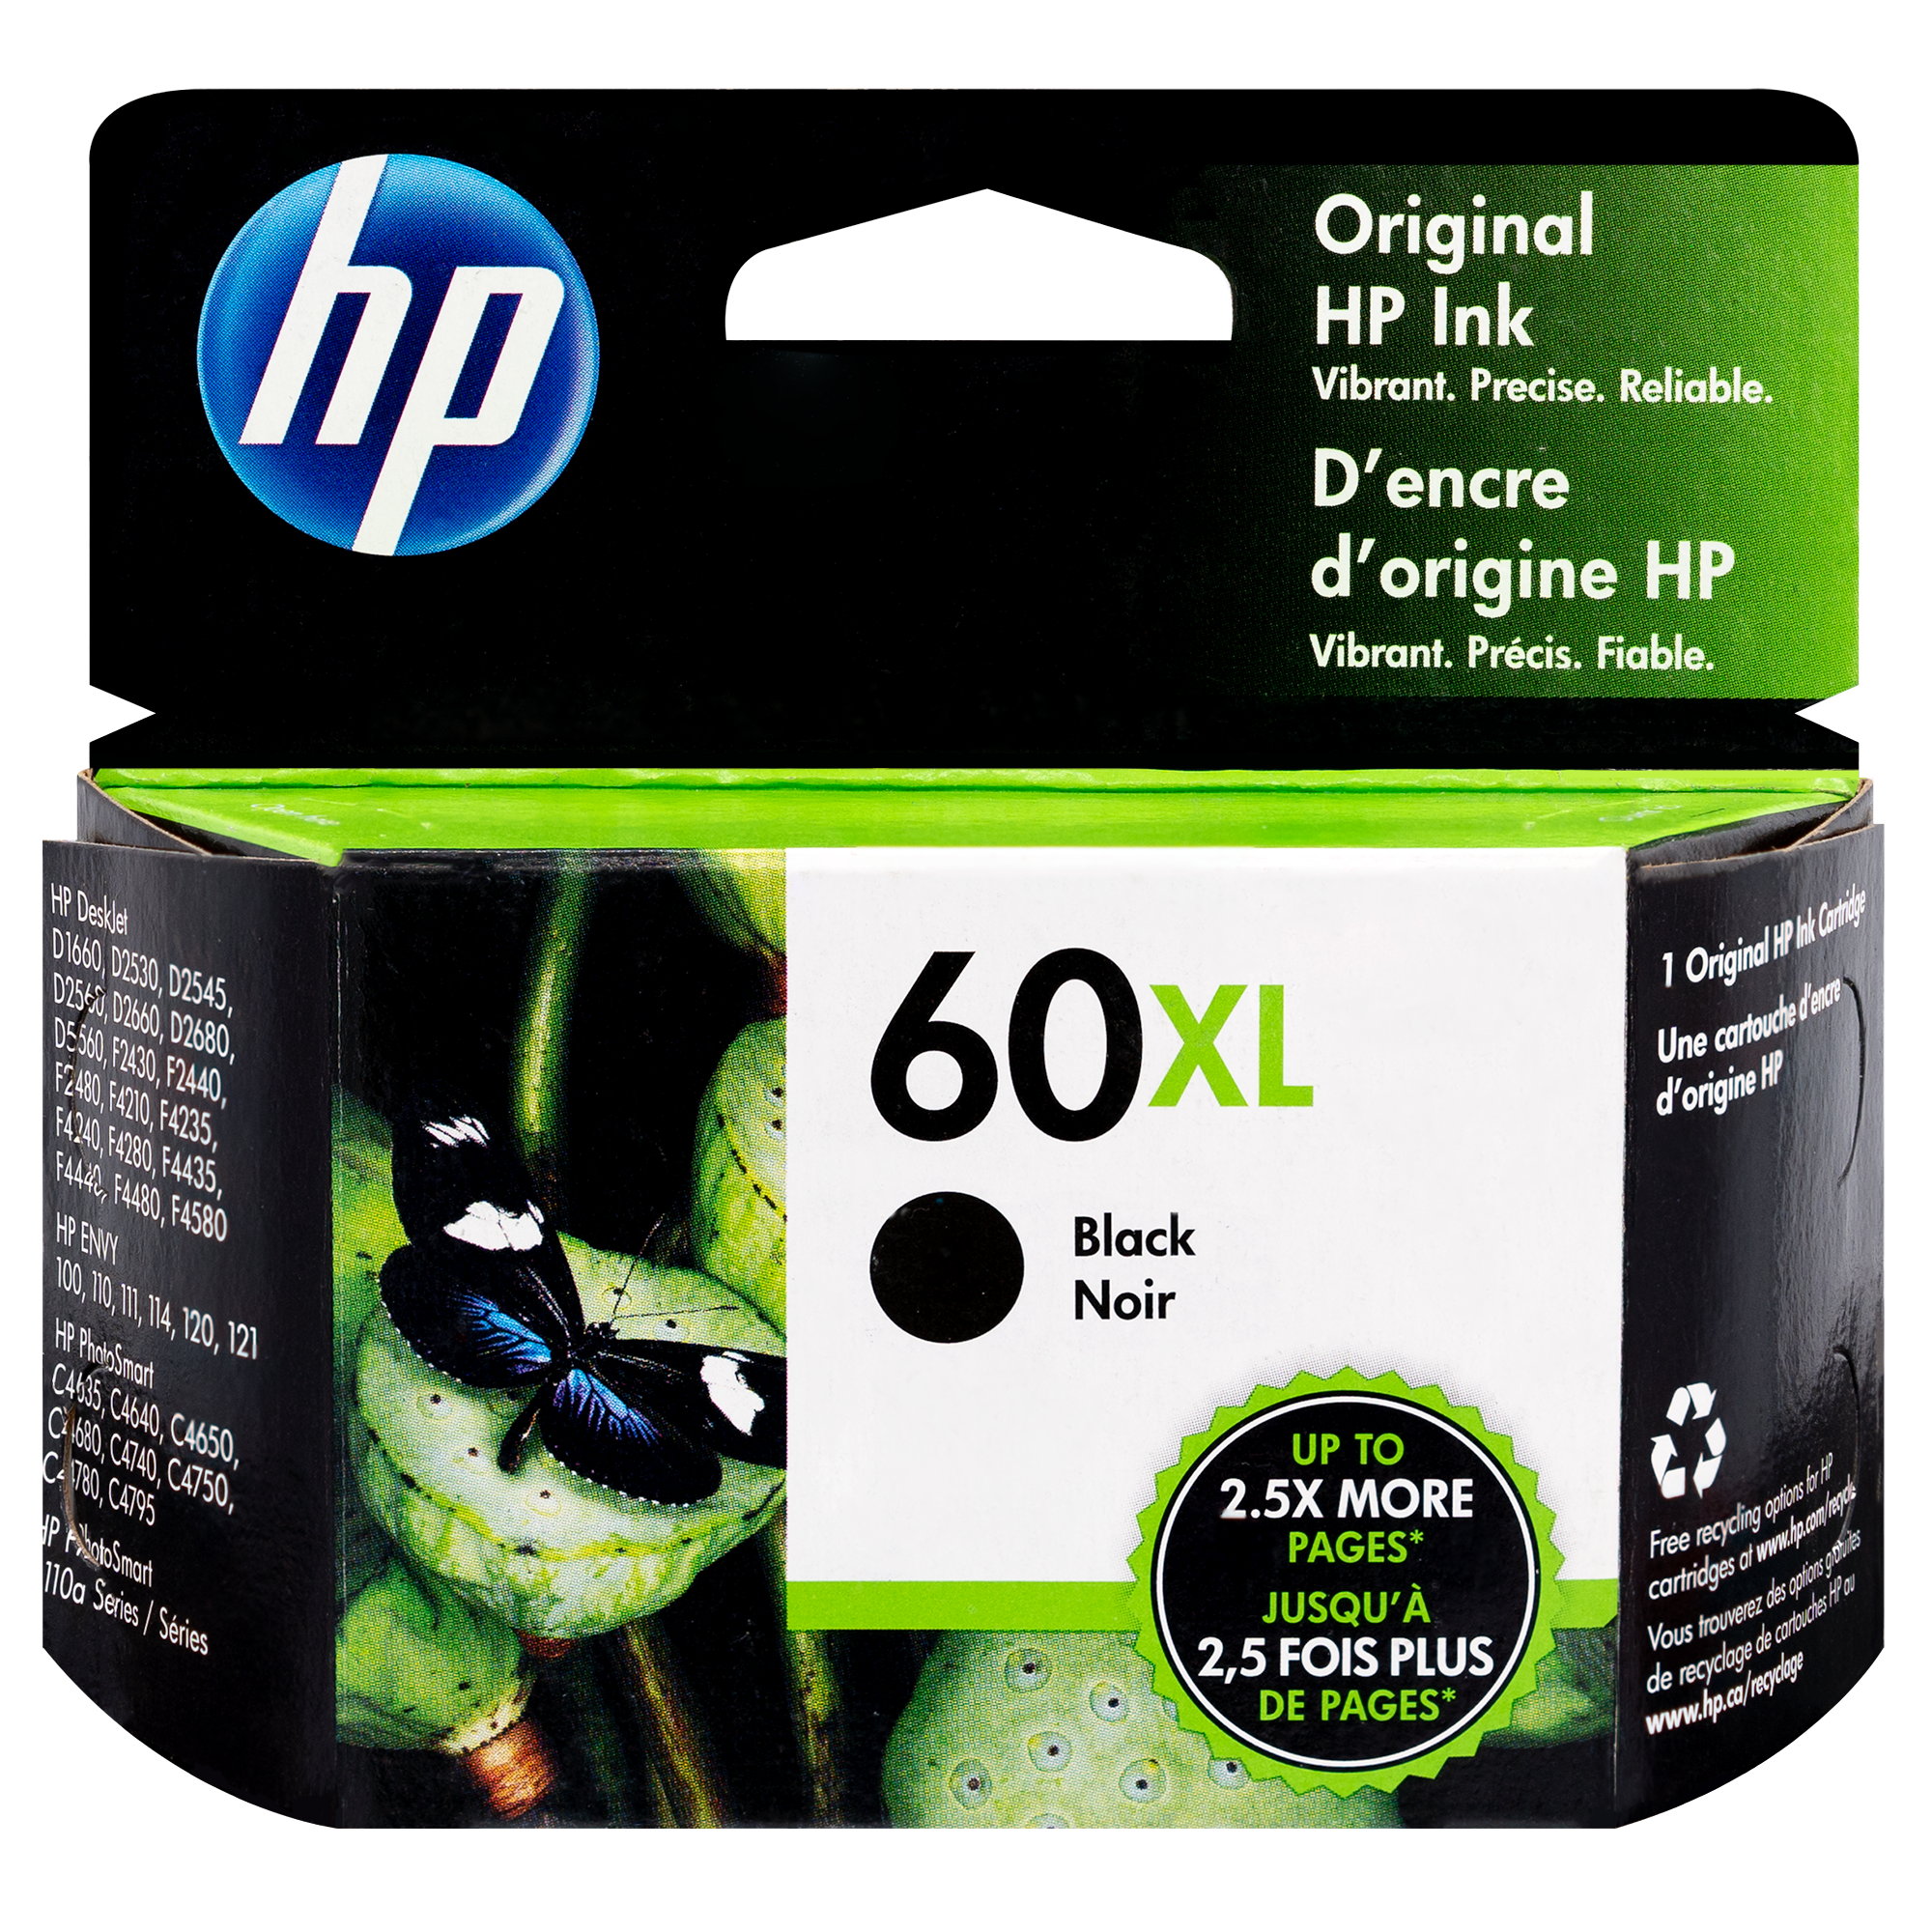 HP Deskjet F4400 F4440 F4480 All-In-One Inkjet Printer